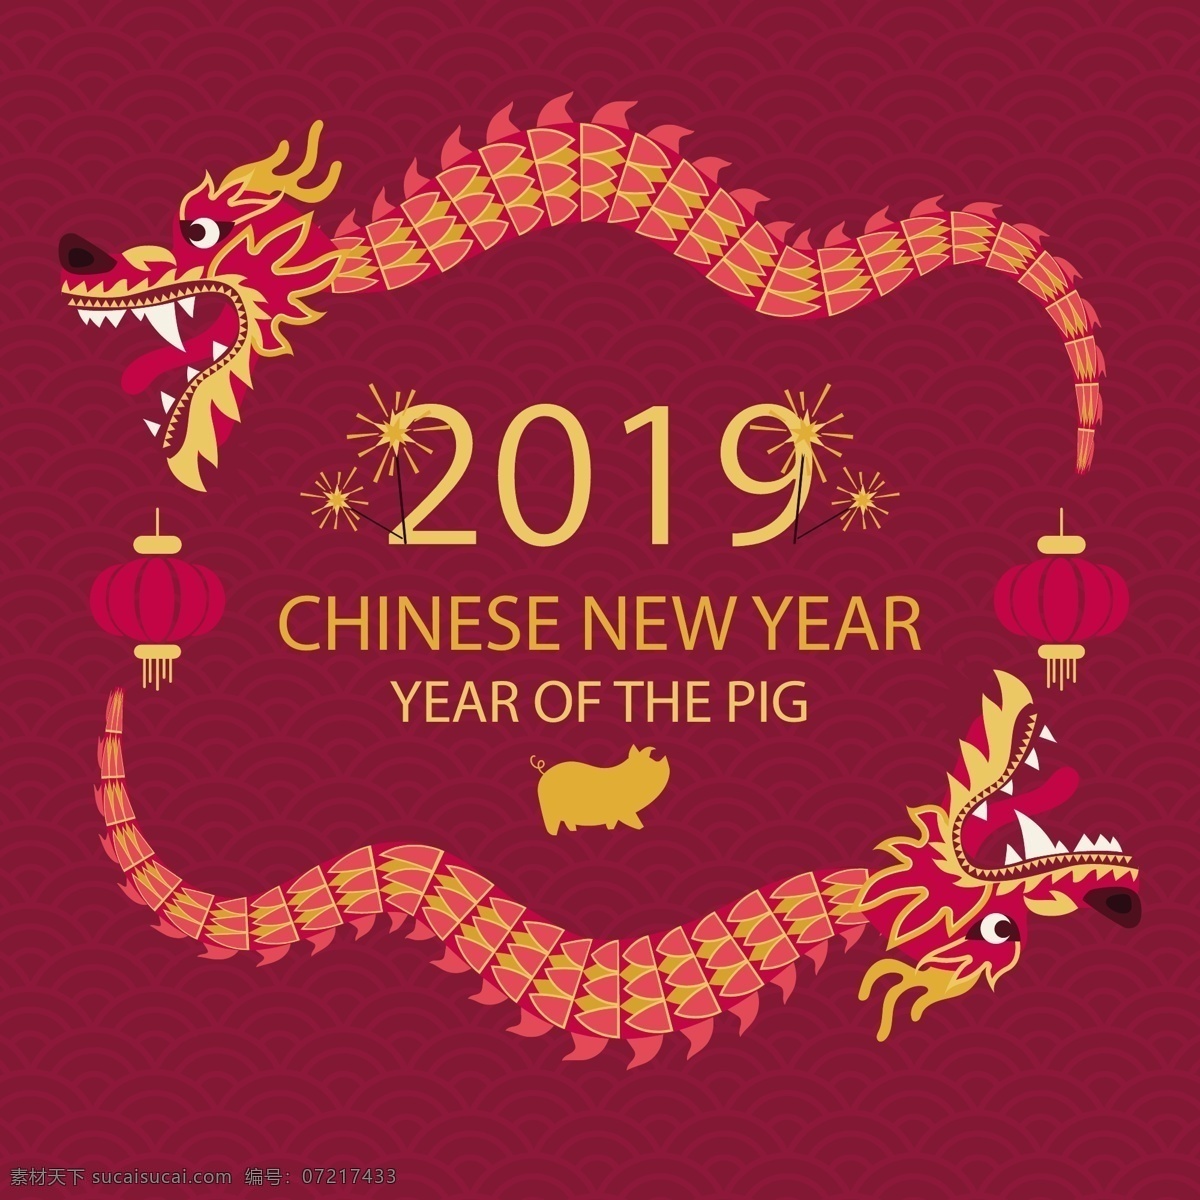 中国 龙 新年 风格 背景 过年 元旦 新年快乐 春节 中国龙 海报 2019 猪年